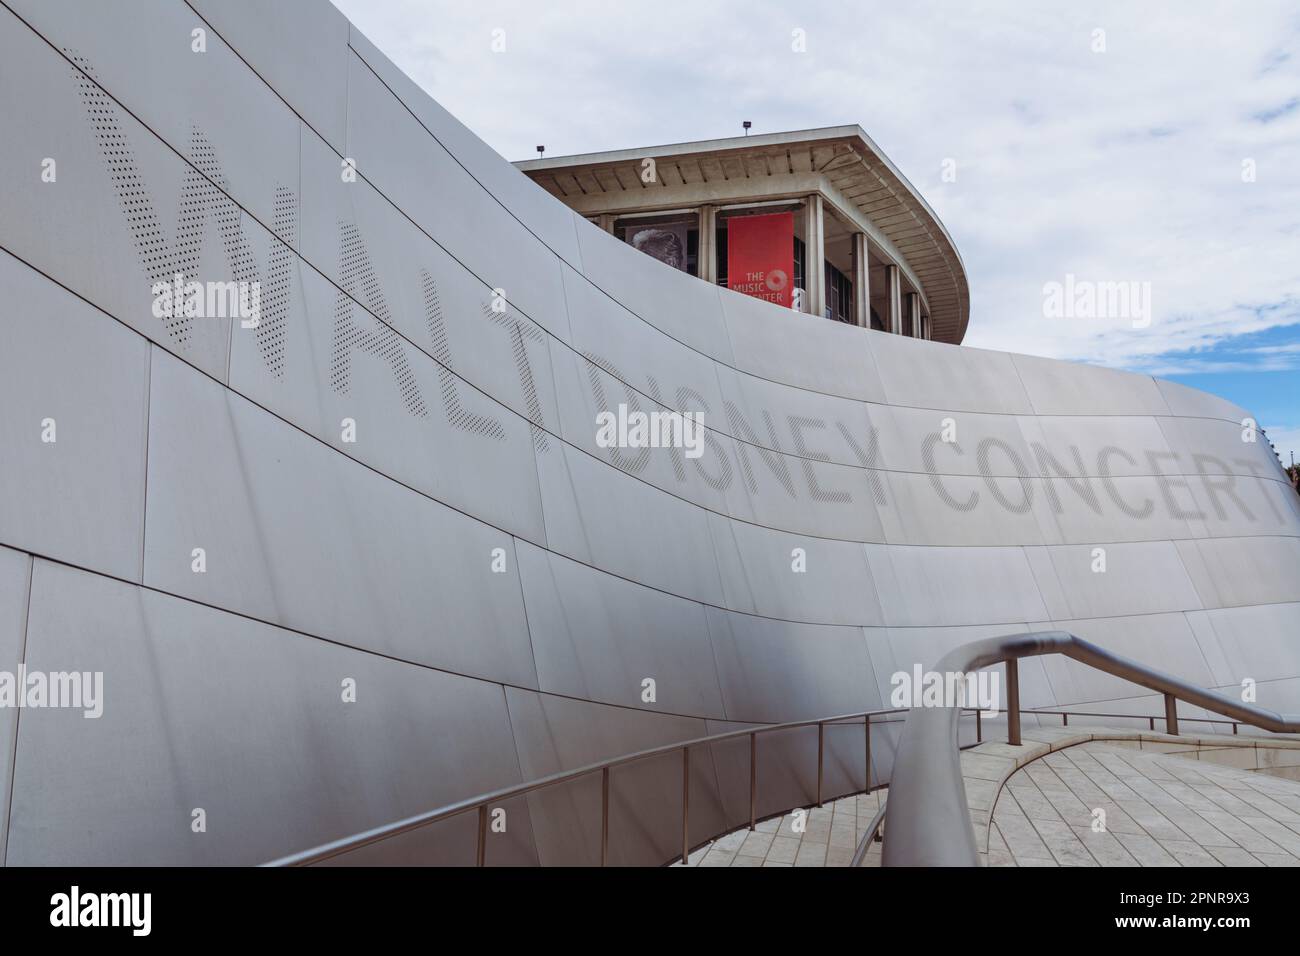 Le Dorothy Chandler Pavilion est visible depuis la passerelle d'entrée jusqu'au Walt Disney concert Hall, conçu par Frank Gehry, dans le centre-ville de Los Angeles. Banque D'Images